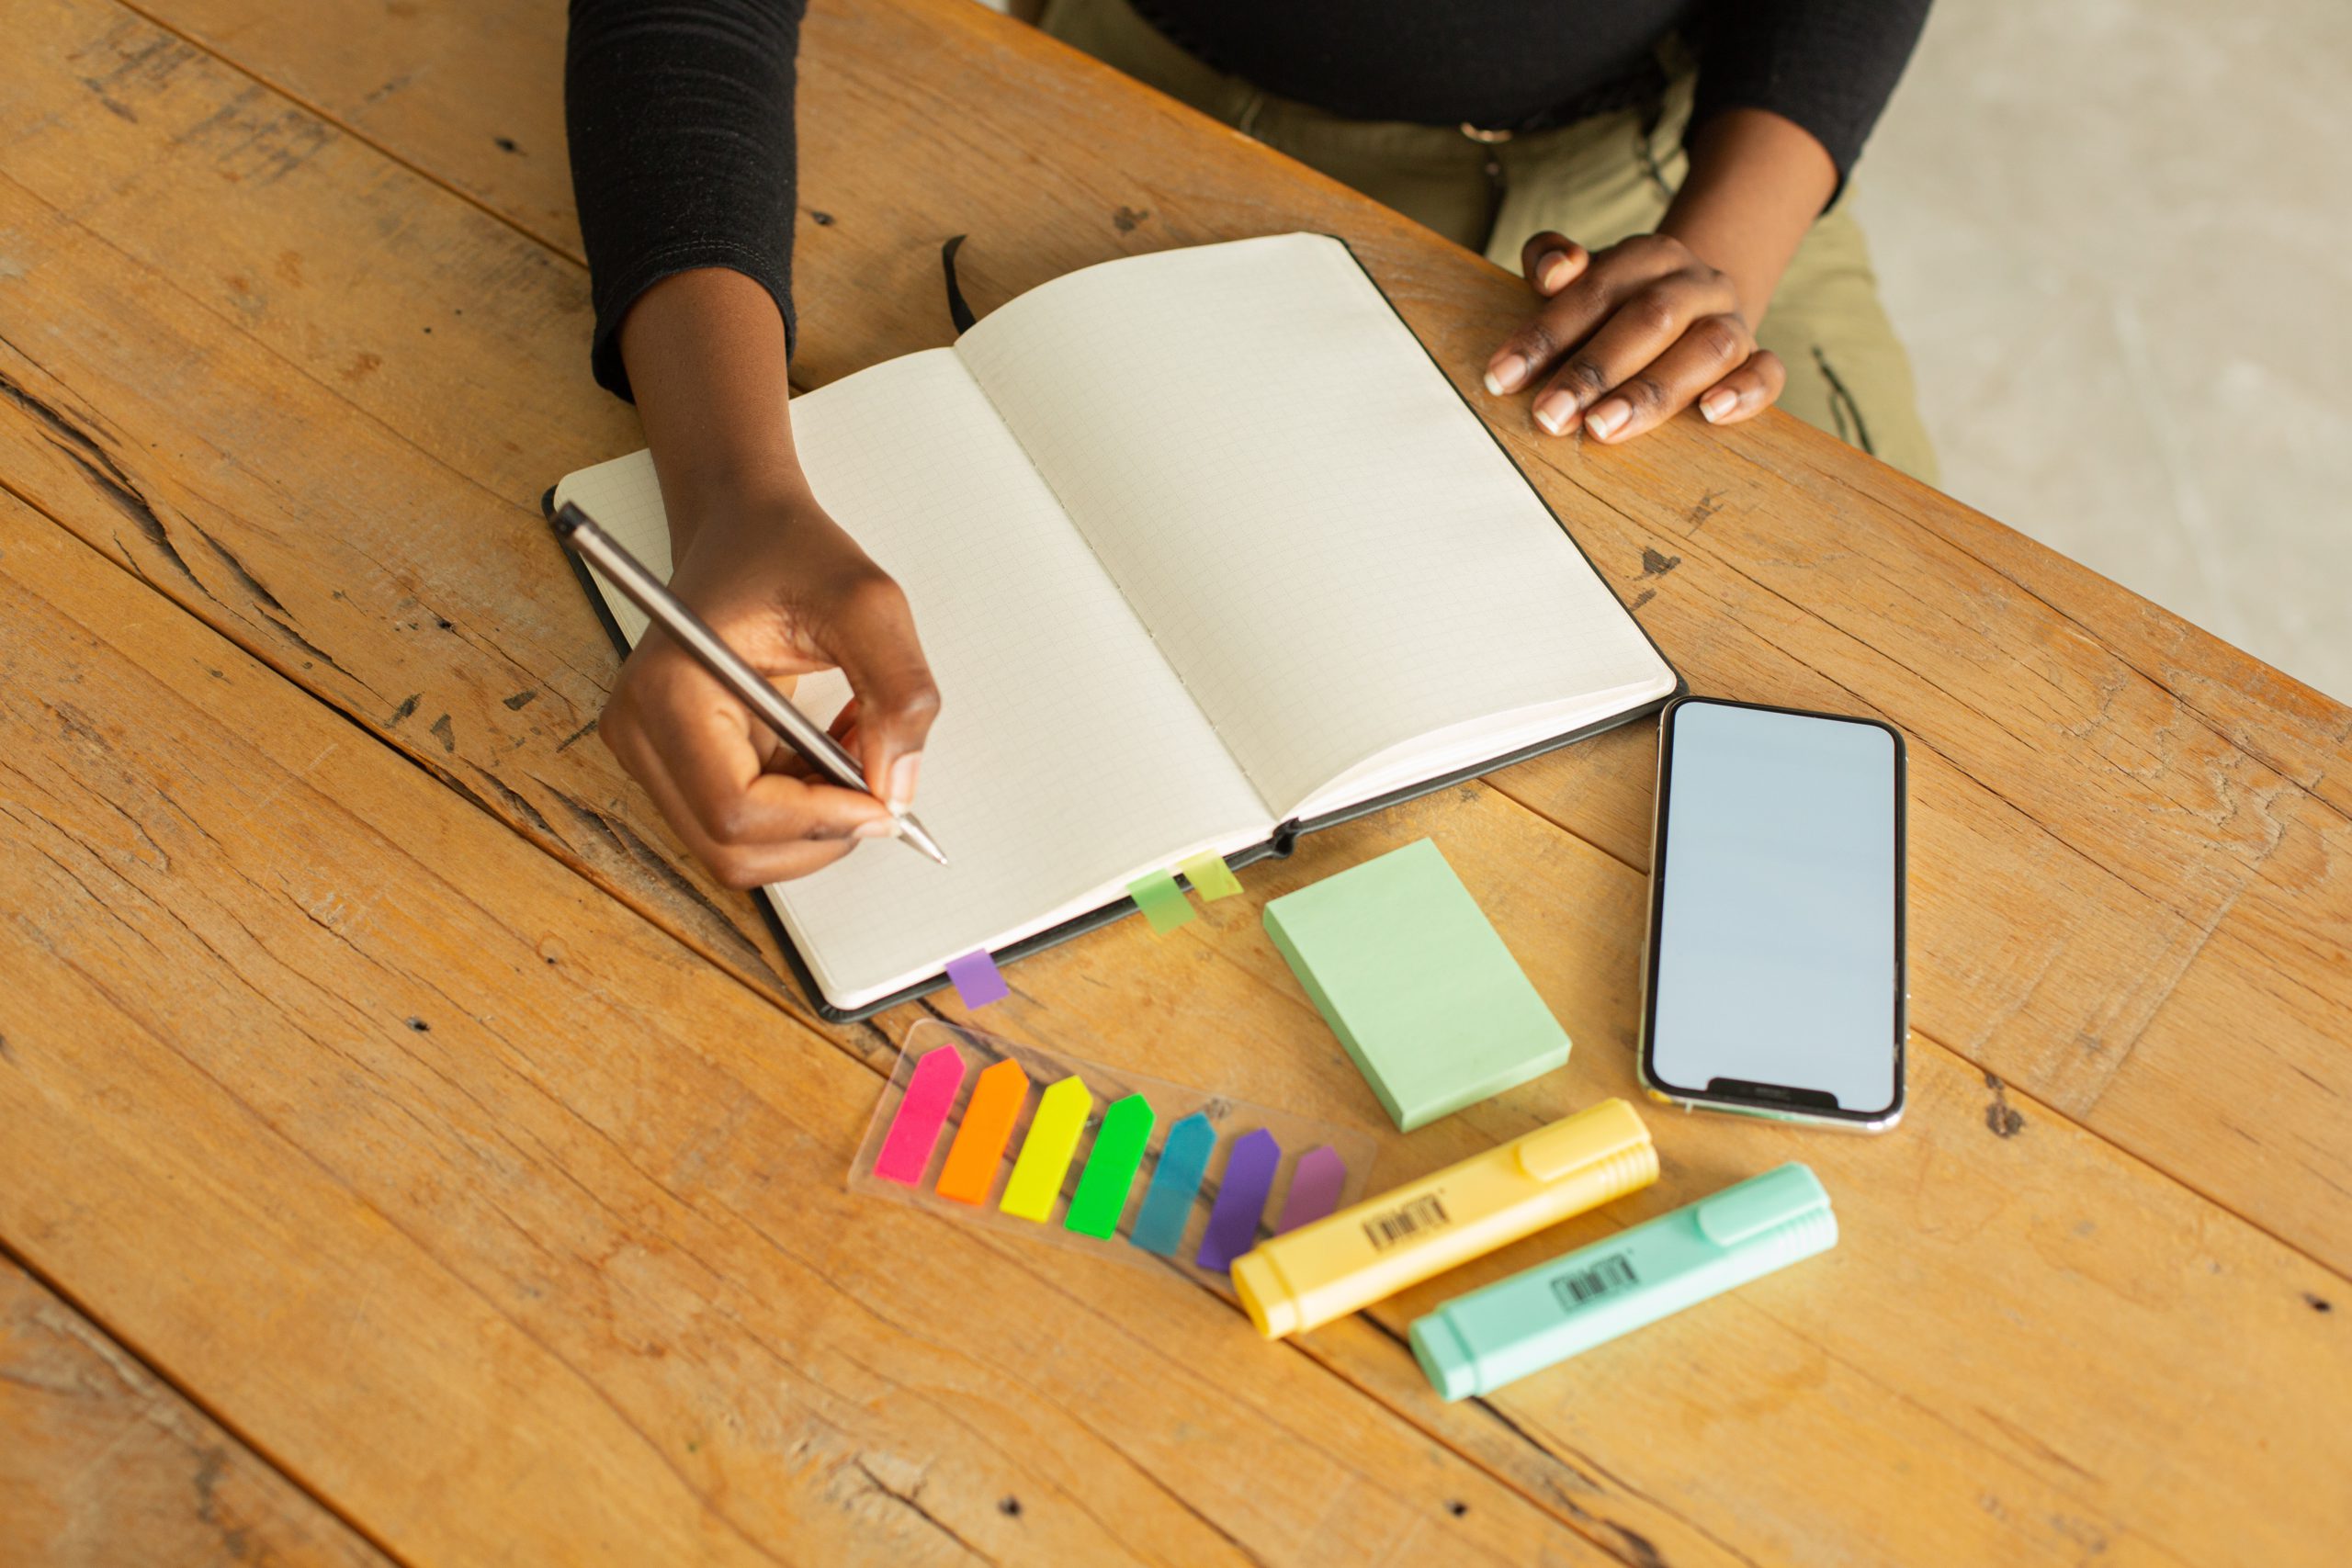 Em cima de uma mesa de madeira, há um caderno com folhas em branco, pequenos blocos de notas coloridos, canetas marcadoras azul e amarela, e um celular. As mãos de uma mulher negra seguram uma caneta prestes a escrever algo no caderno.